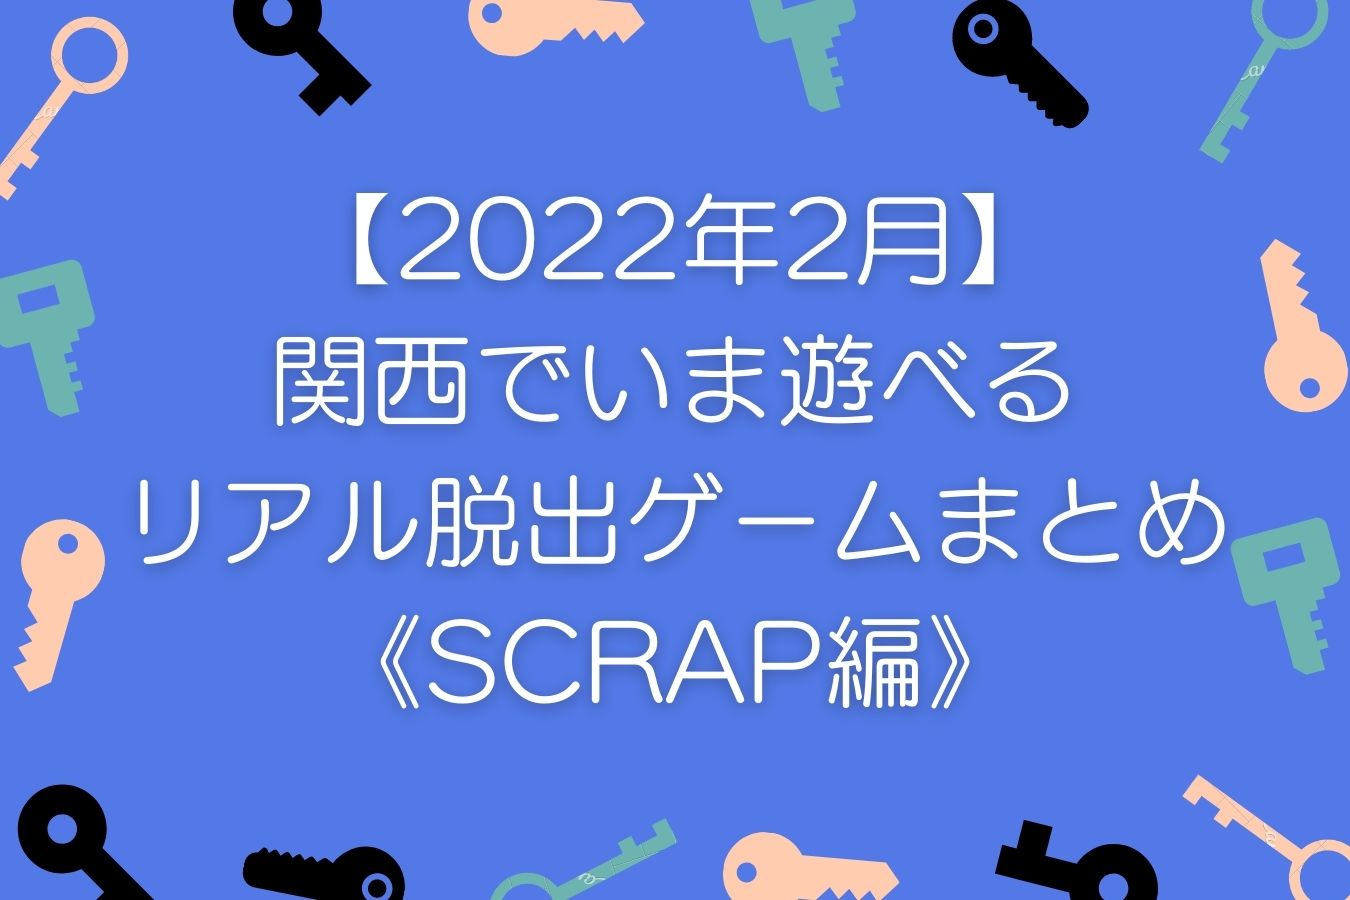 【2022年2月】-関西でいま遊べる-リアル脱出ゲームまとめ-《SCRAP編》